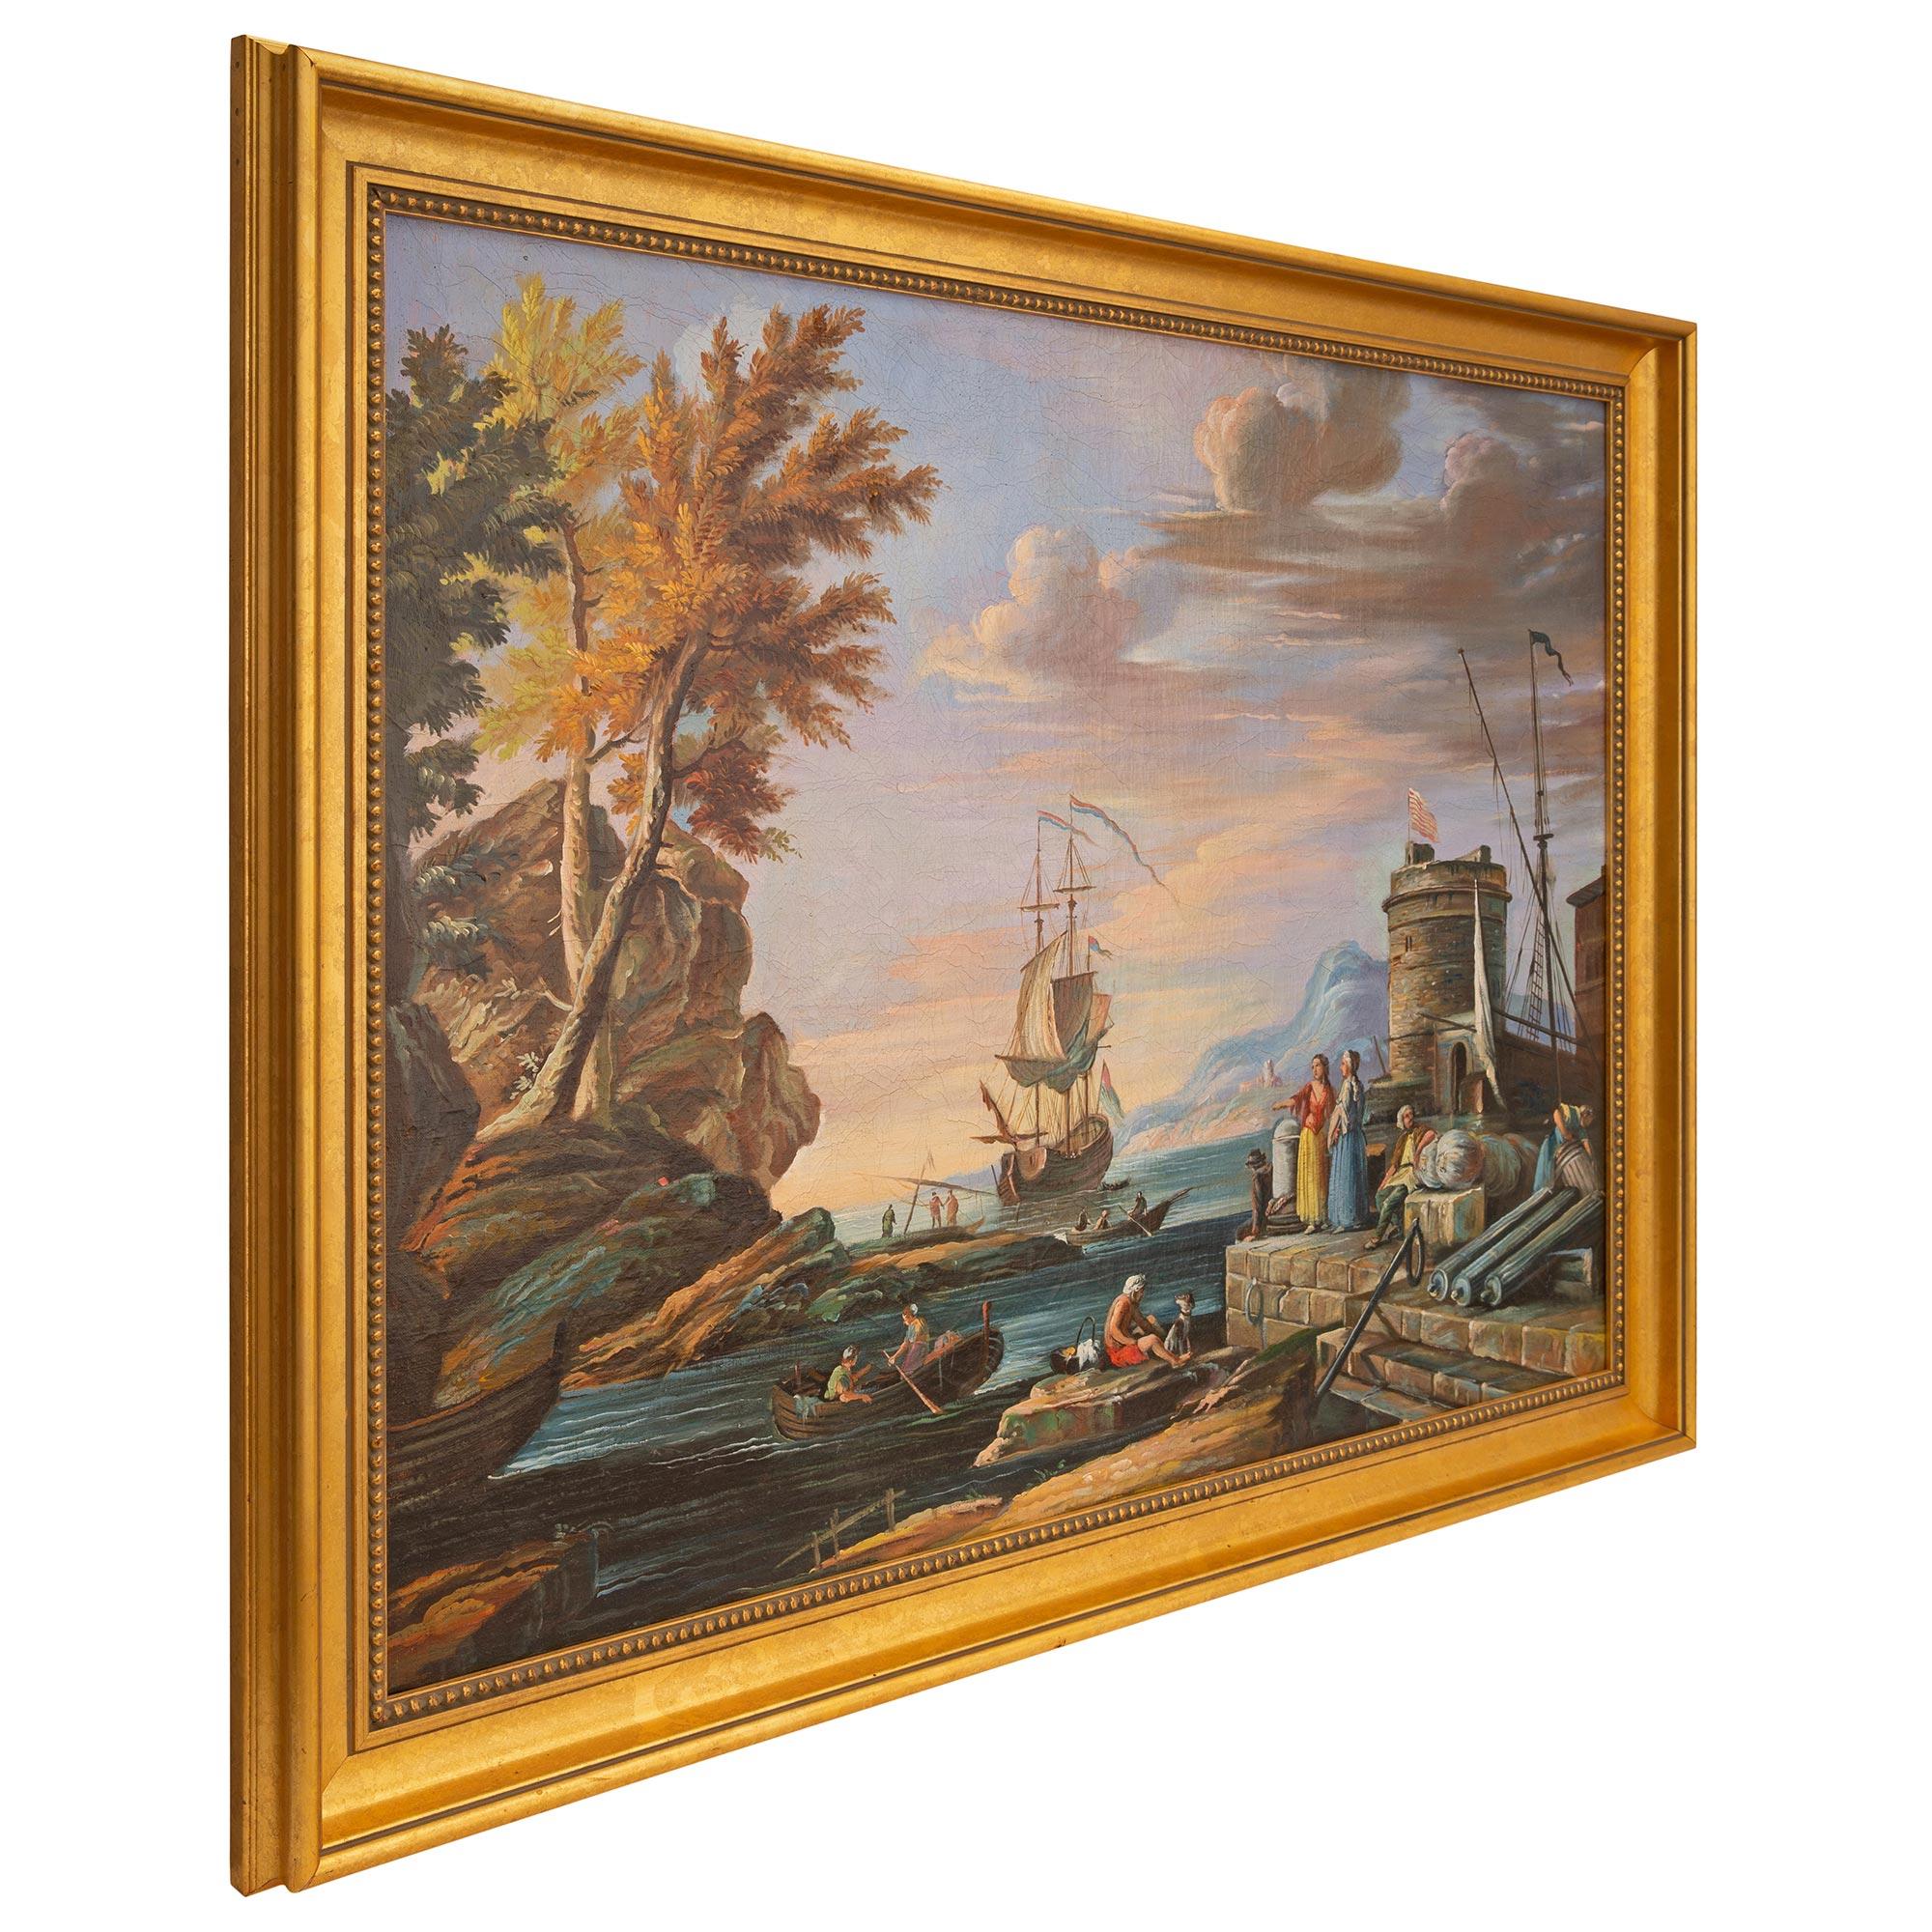 Une superbe huile sur toile italienne du XVIIIe siècle dans un cadre en bois doré. La peinture représente une baie calme au crépuscule avec un voilier ancré au centre et les magnifiques montagnes italiennes à l'arrière-plan. Au premier plan se